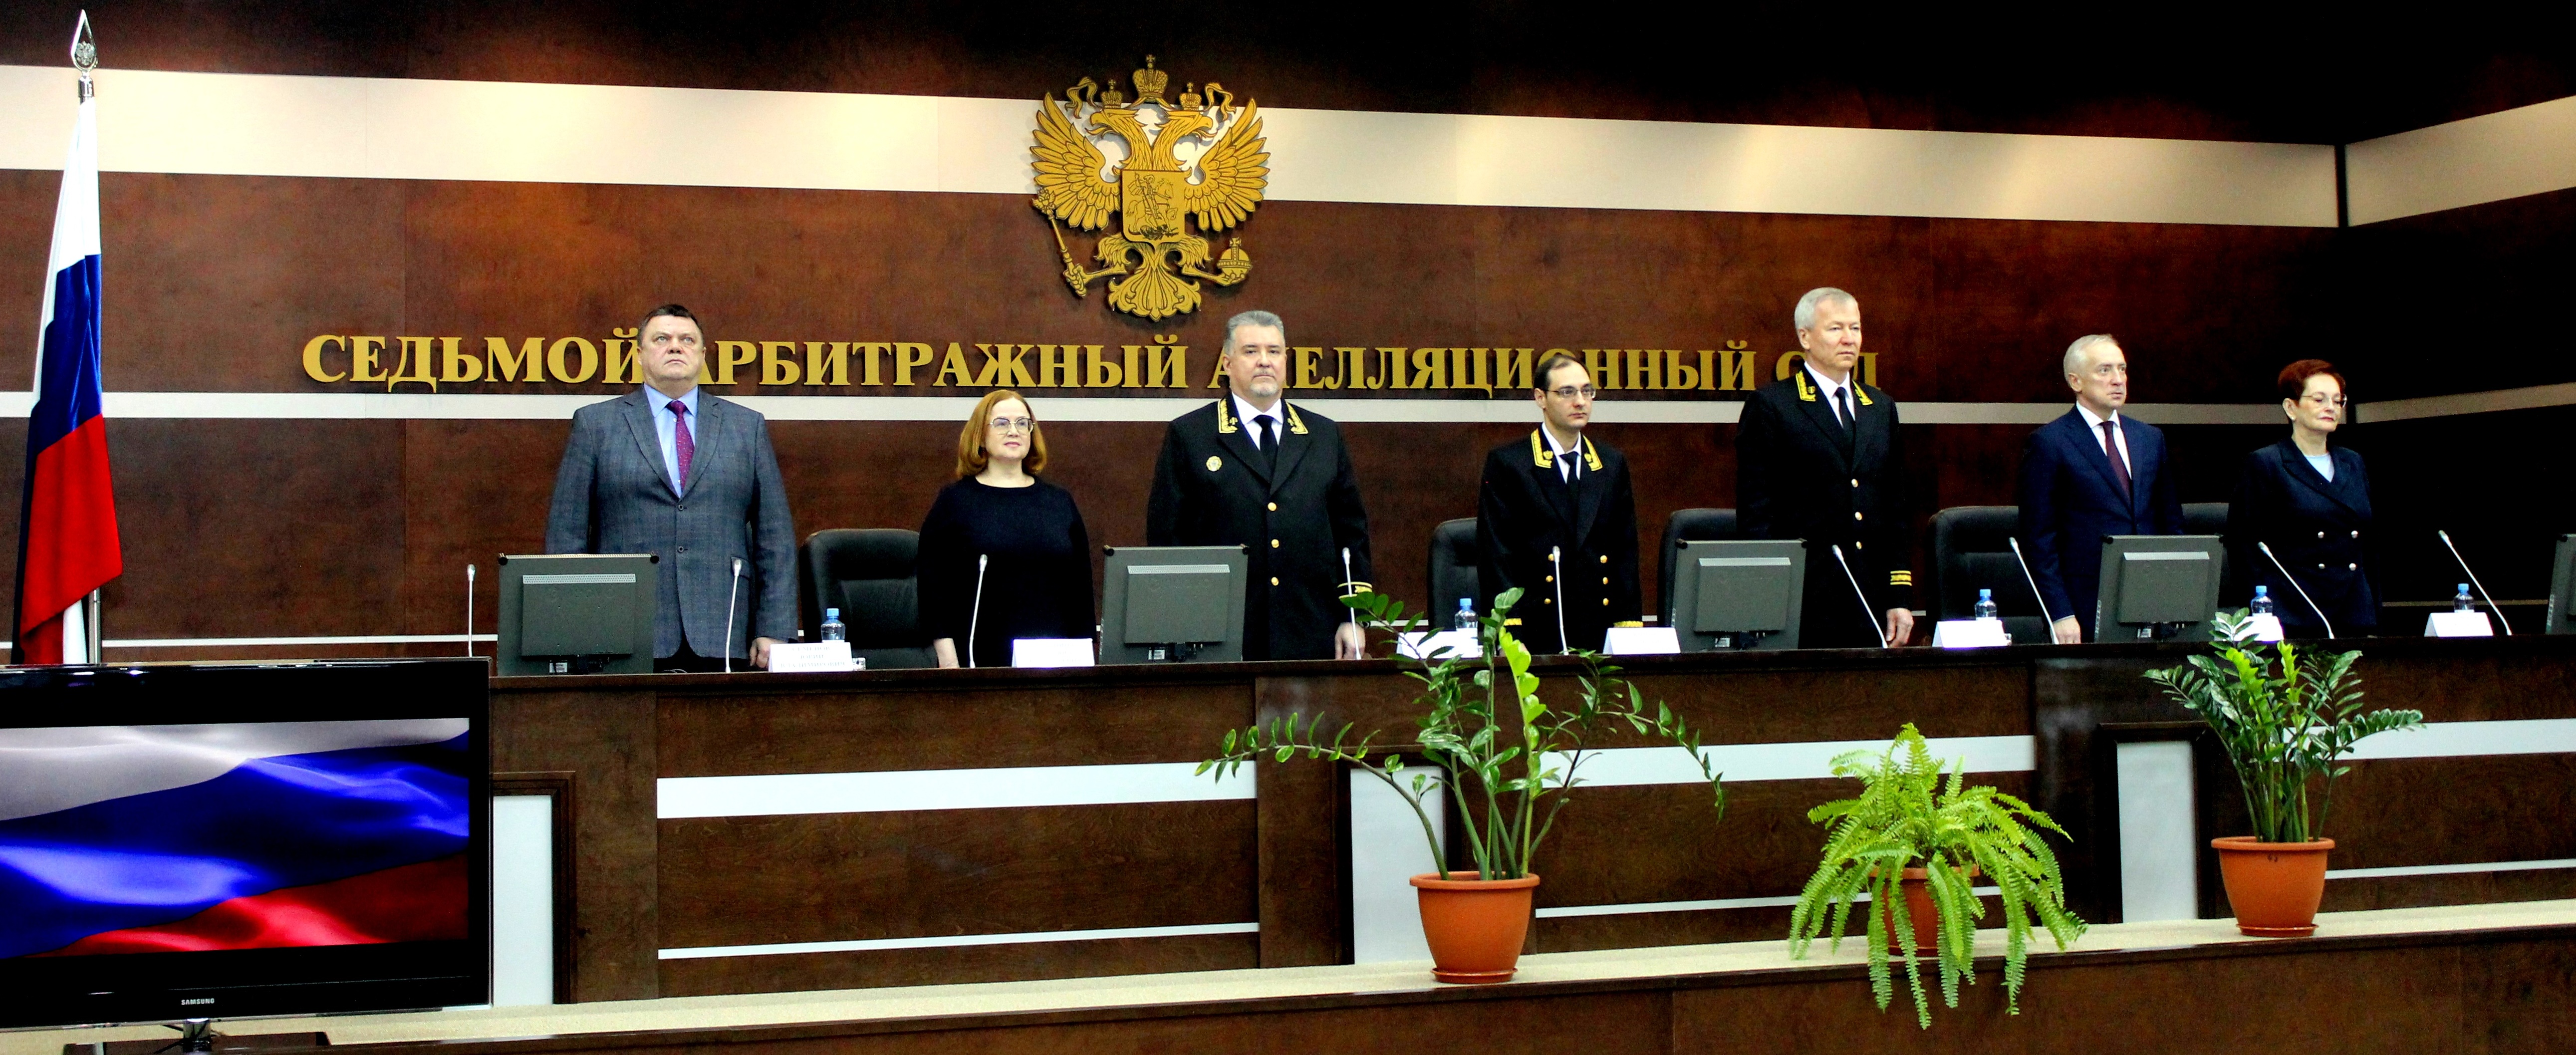 Торжественное собрание, посвященное представлению председателя Седьмого арбитражного апелляционного суда Бориса Геннадьевича Долгалева